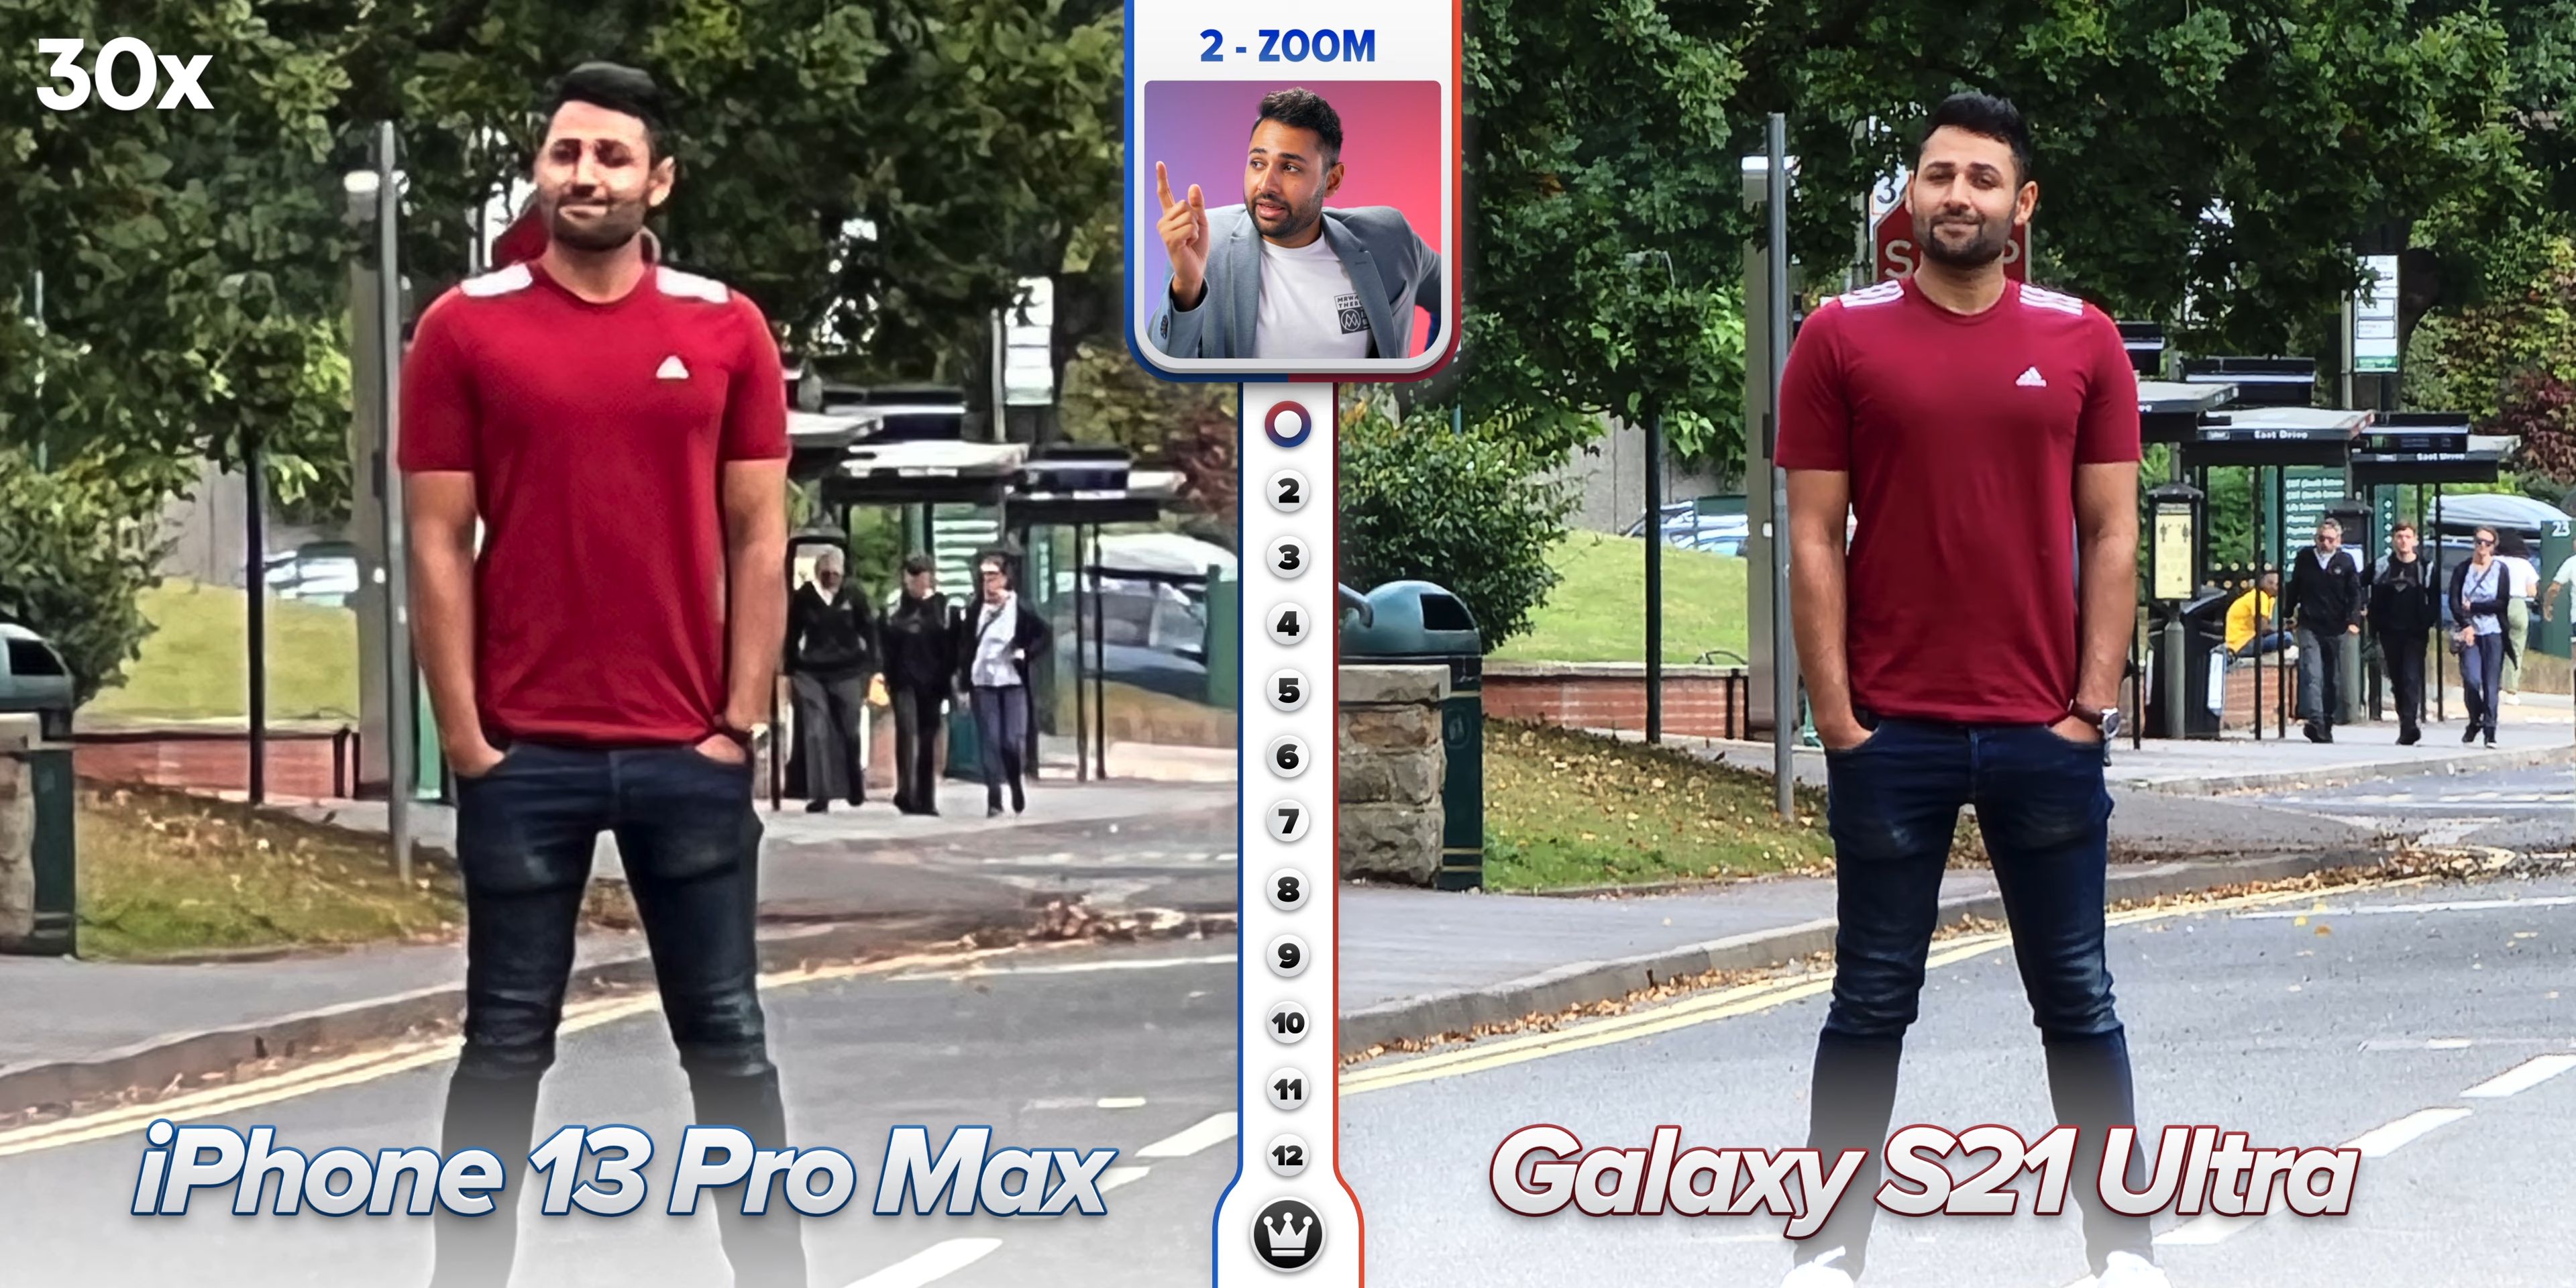 Качество фото 14 айфона. Айфон 13 и самсунг ультра камера. Iphone 13 Pro Max камера. Сравнение камер iphone 13 Pro Max. Сравнение камер iphone 13 Pro Max и Samsung Galaxy.